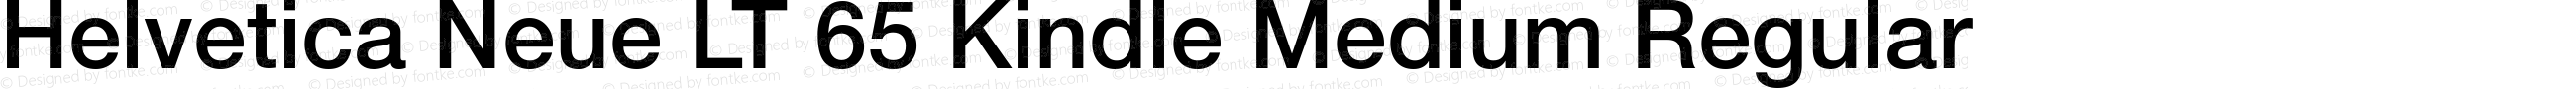 Helvetica Neue LT 65 Kindle Medium Regular